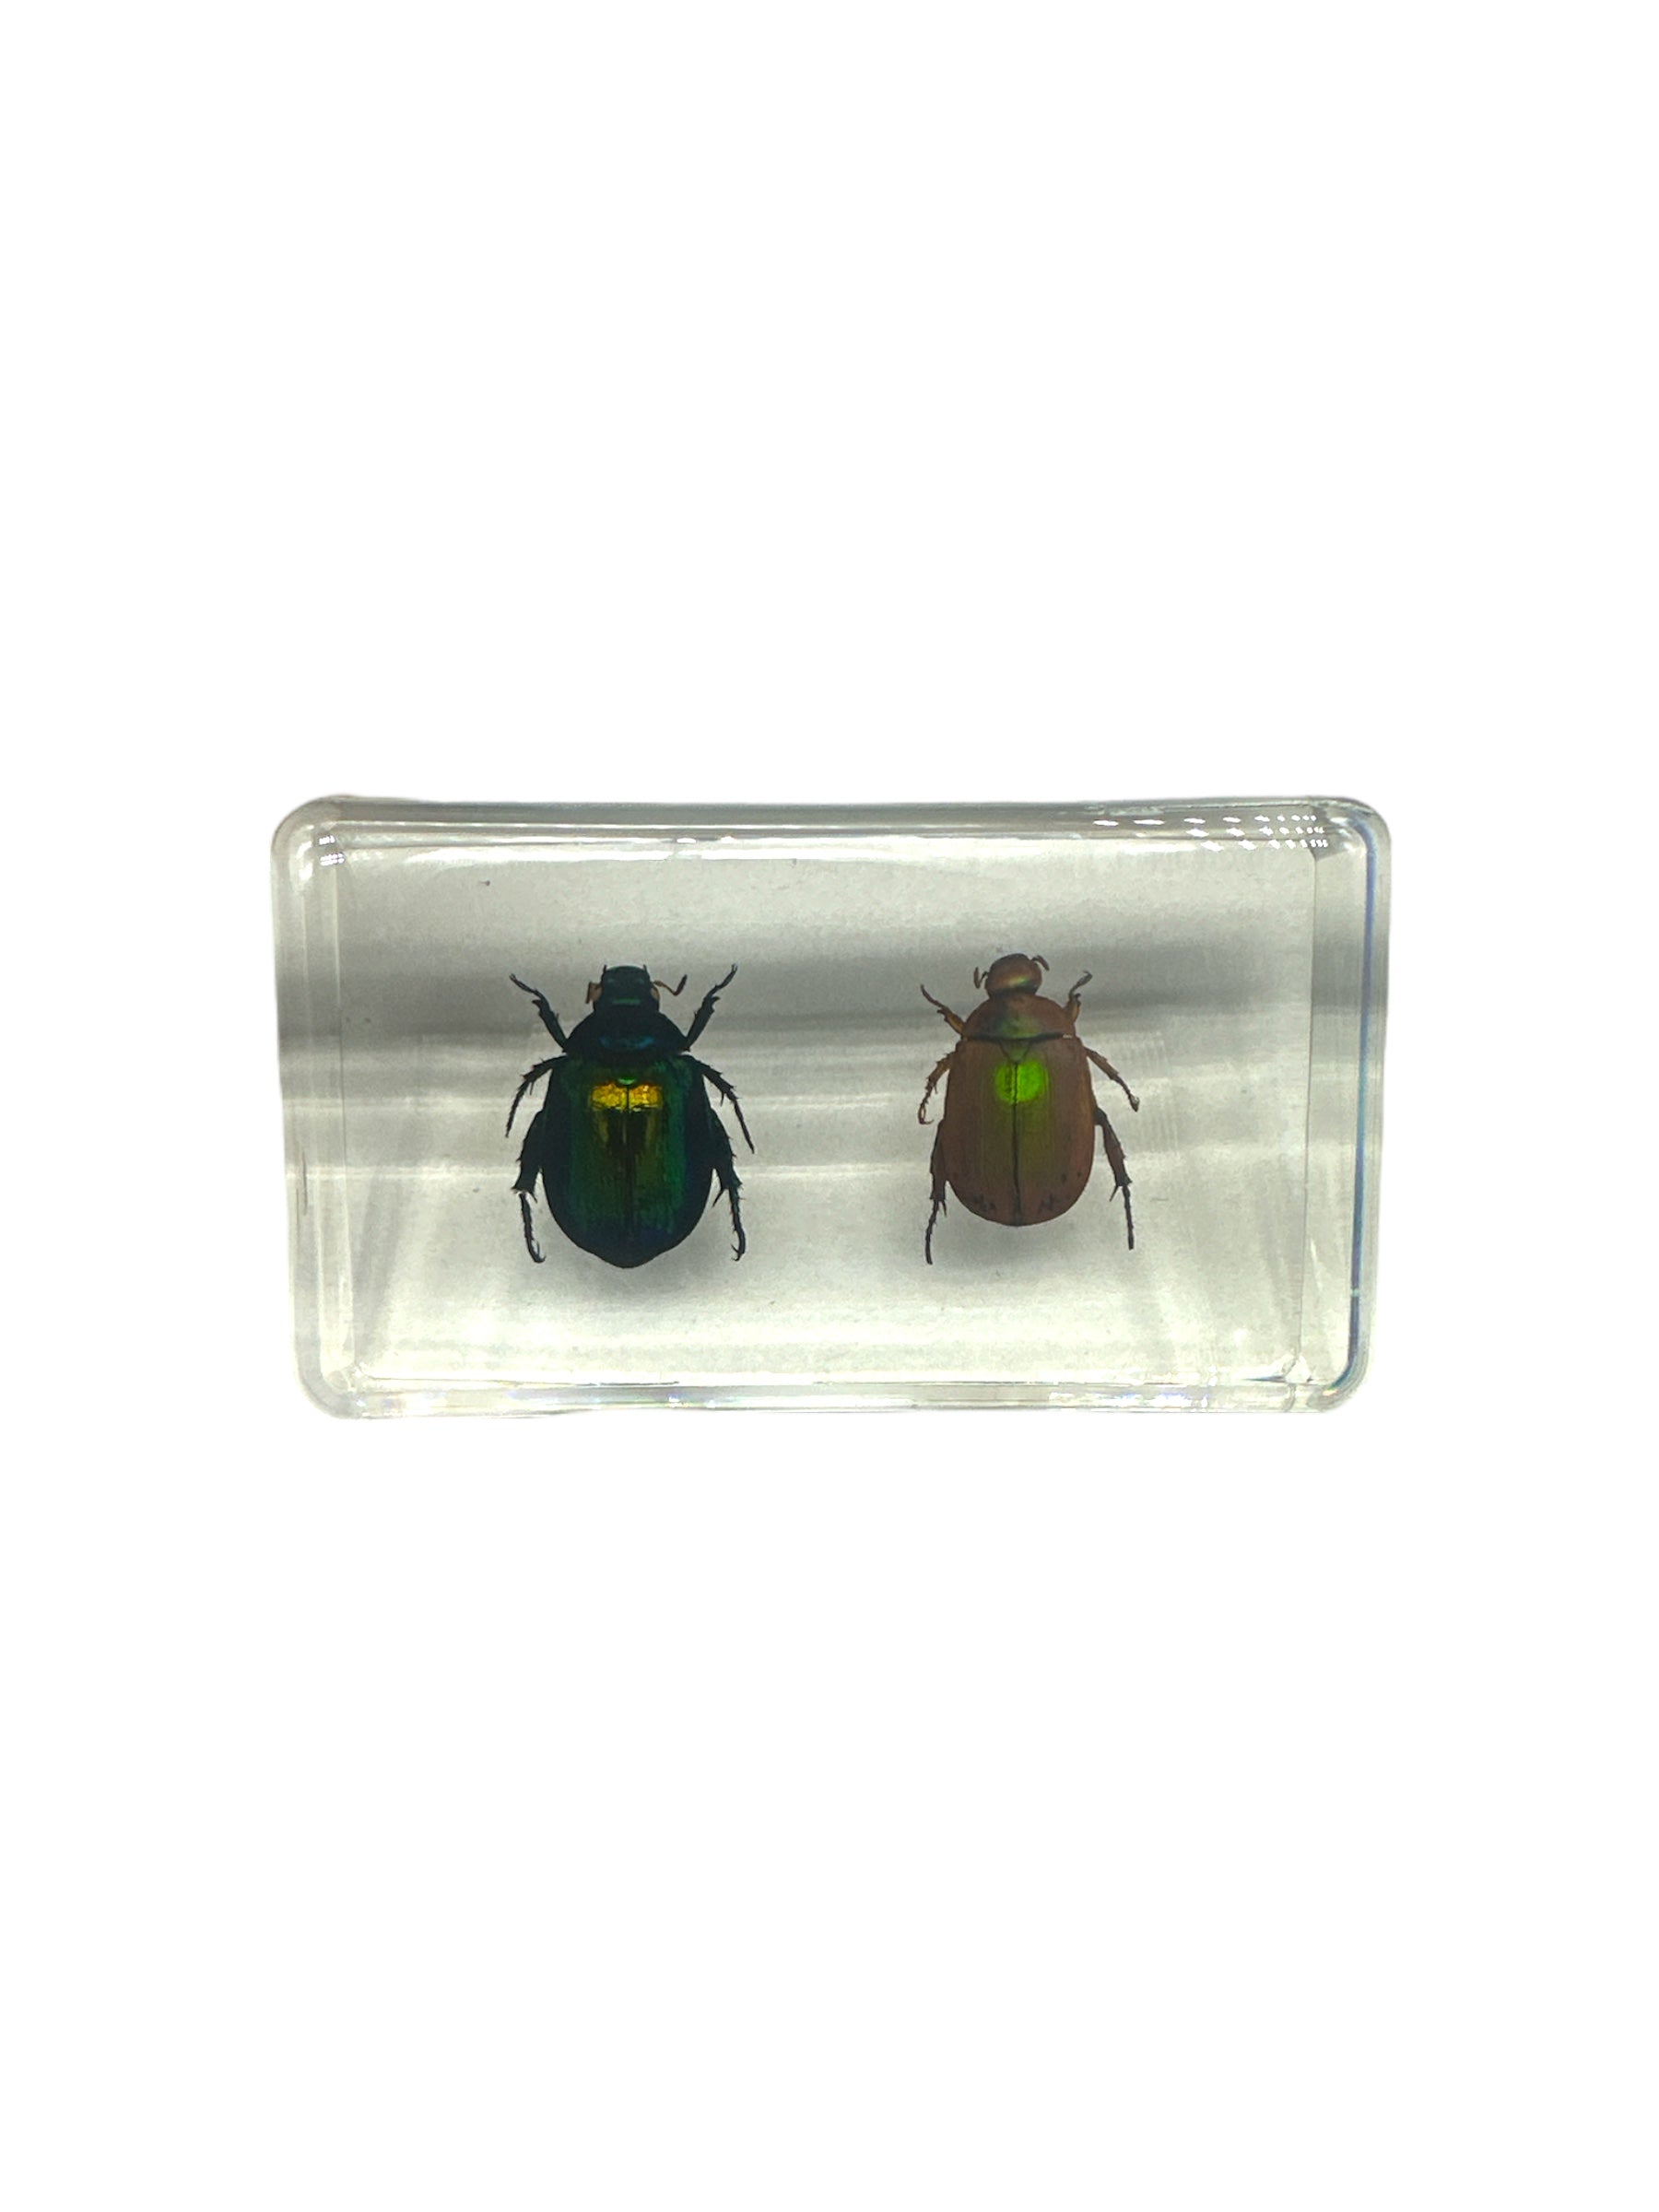 2 Stag Beetles - Specimen In Resin